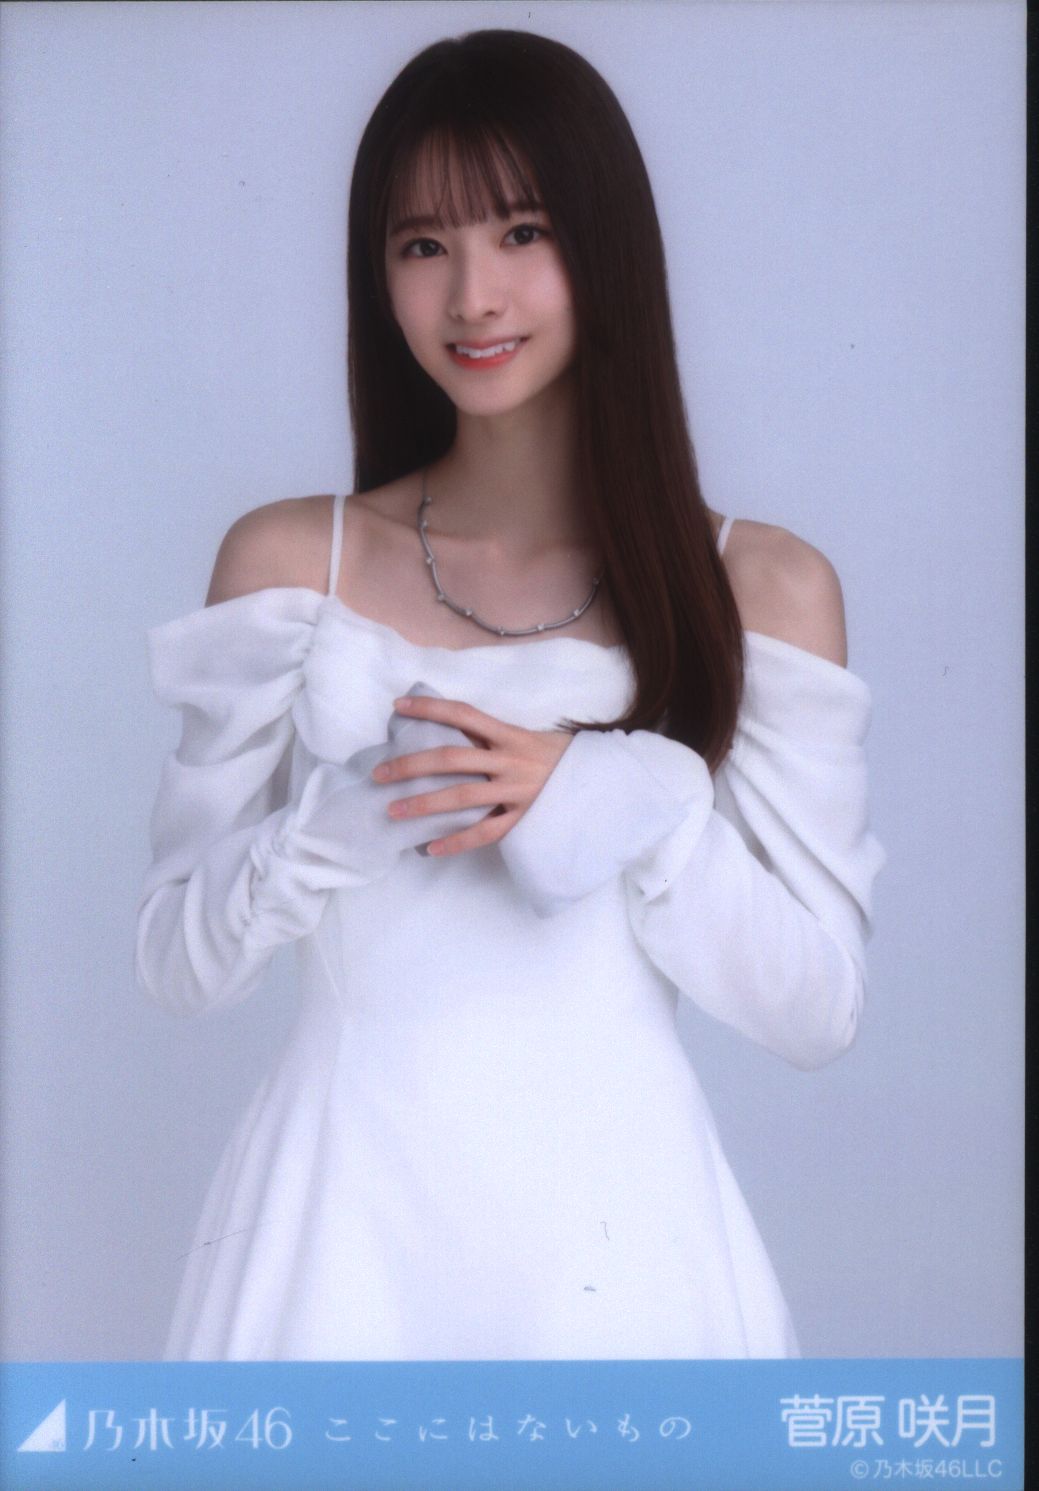 菅原咲月のスペシャル衣装37 ヨリのみ - 女性アイドル